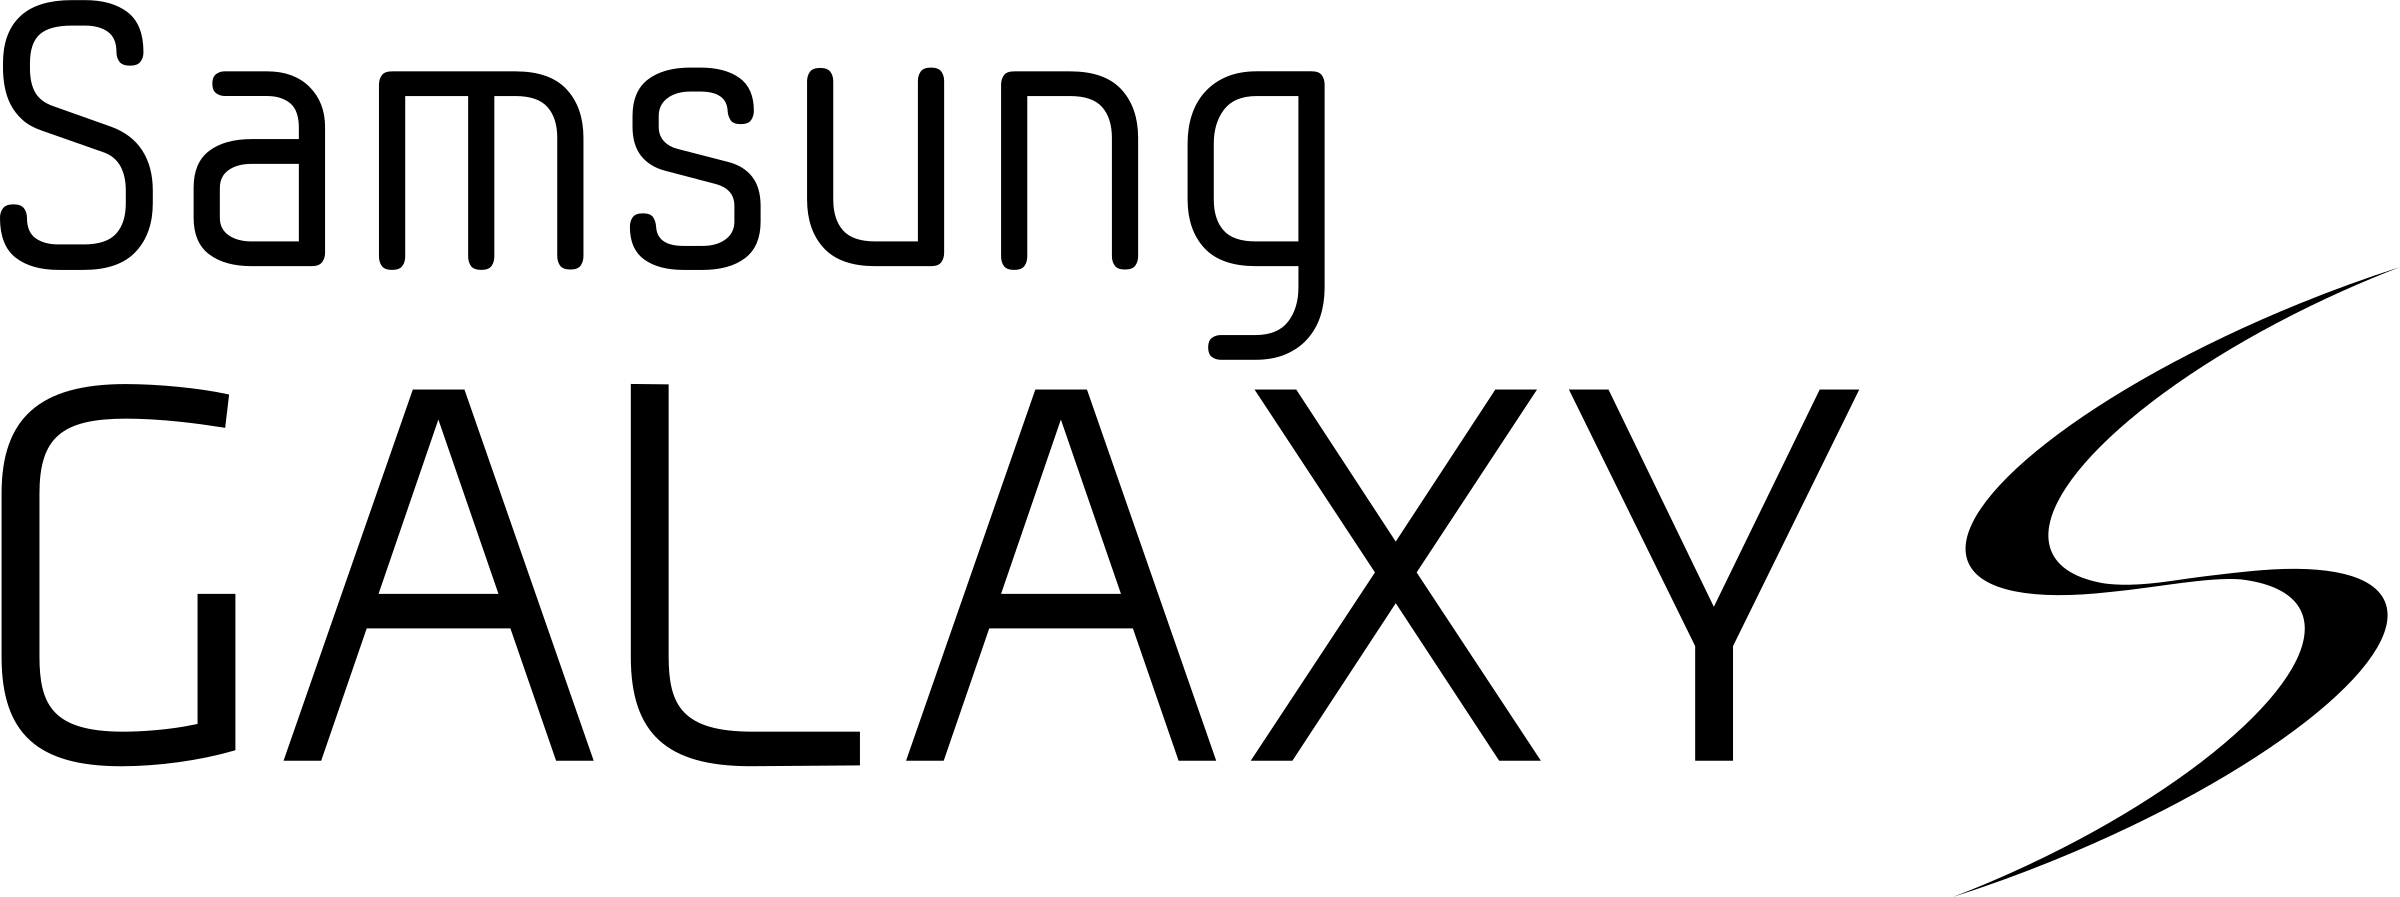 Samsung logo transparente PNG